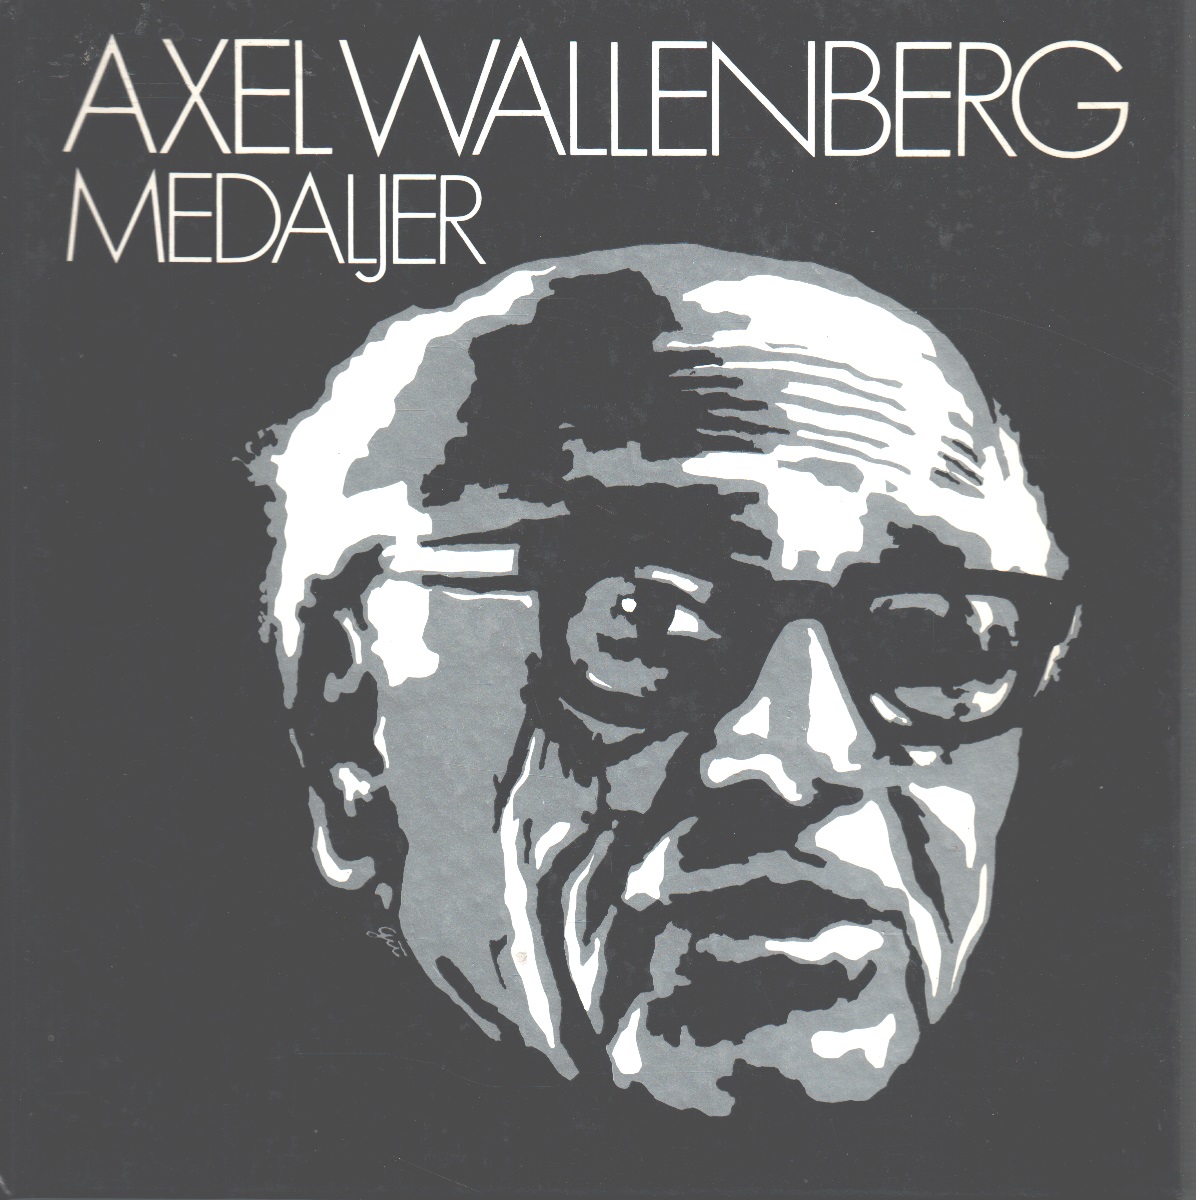 Axel Wallenberg medaljer - Lagerqvist, Lars O.